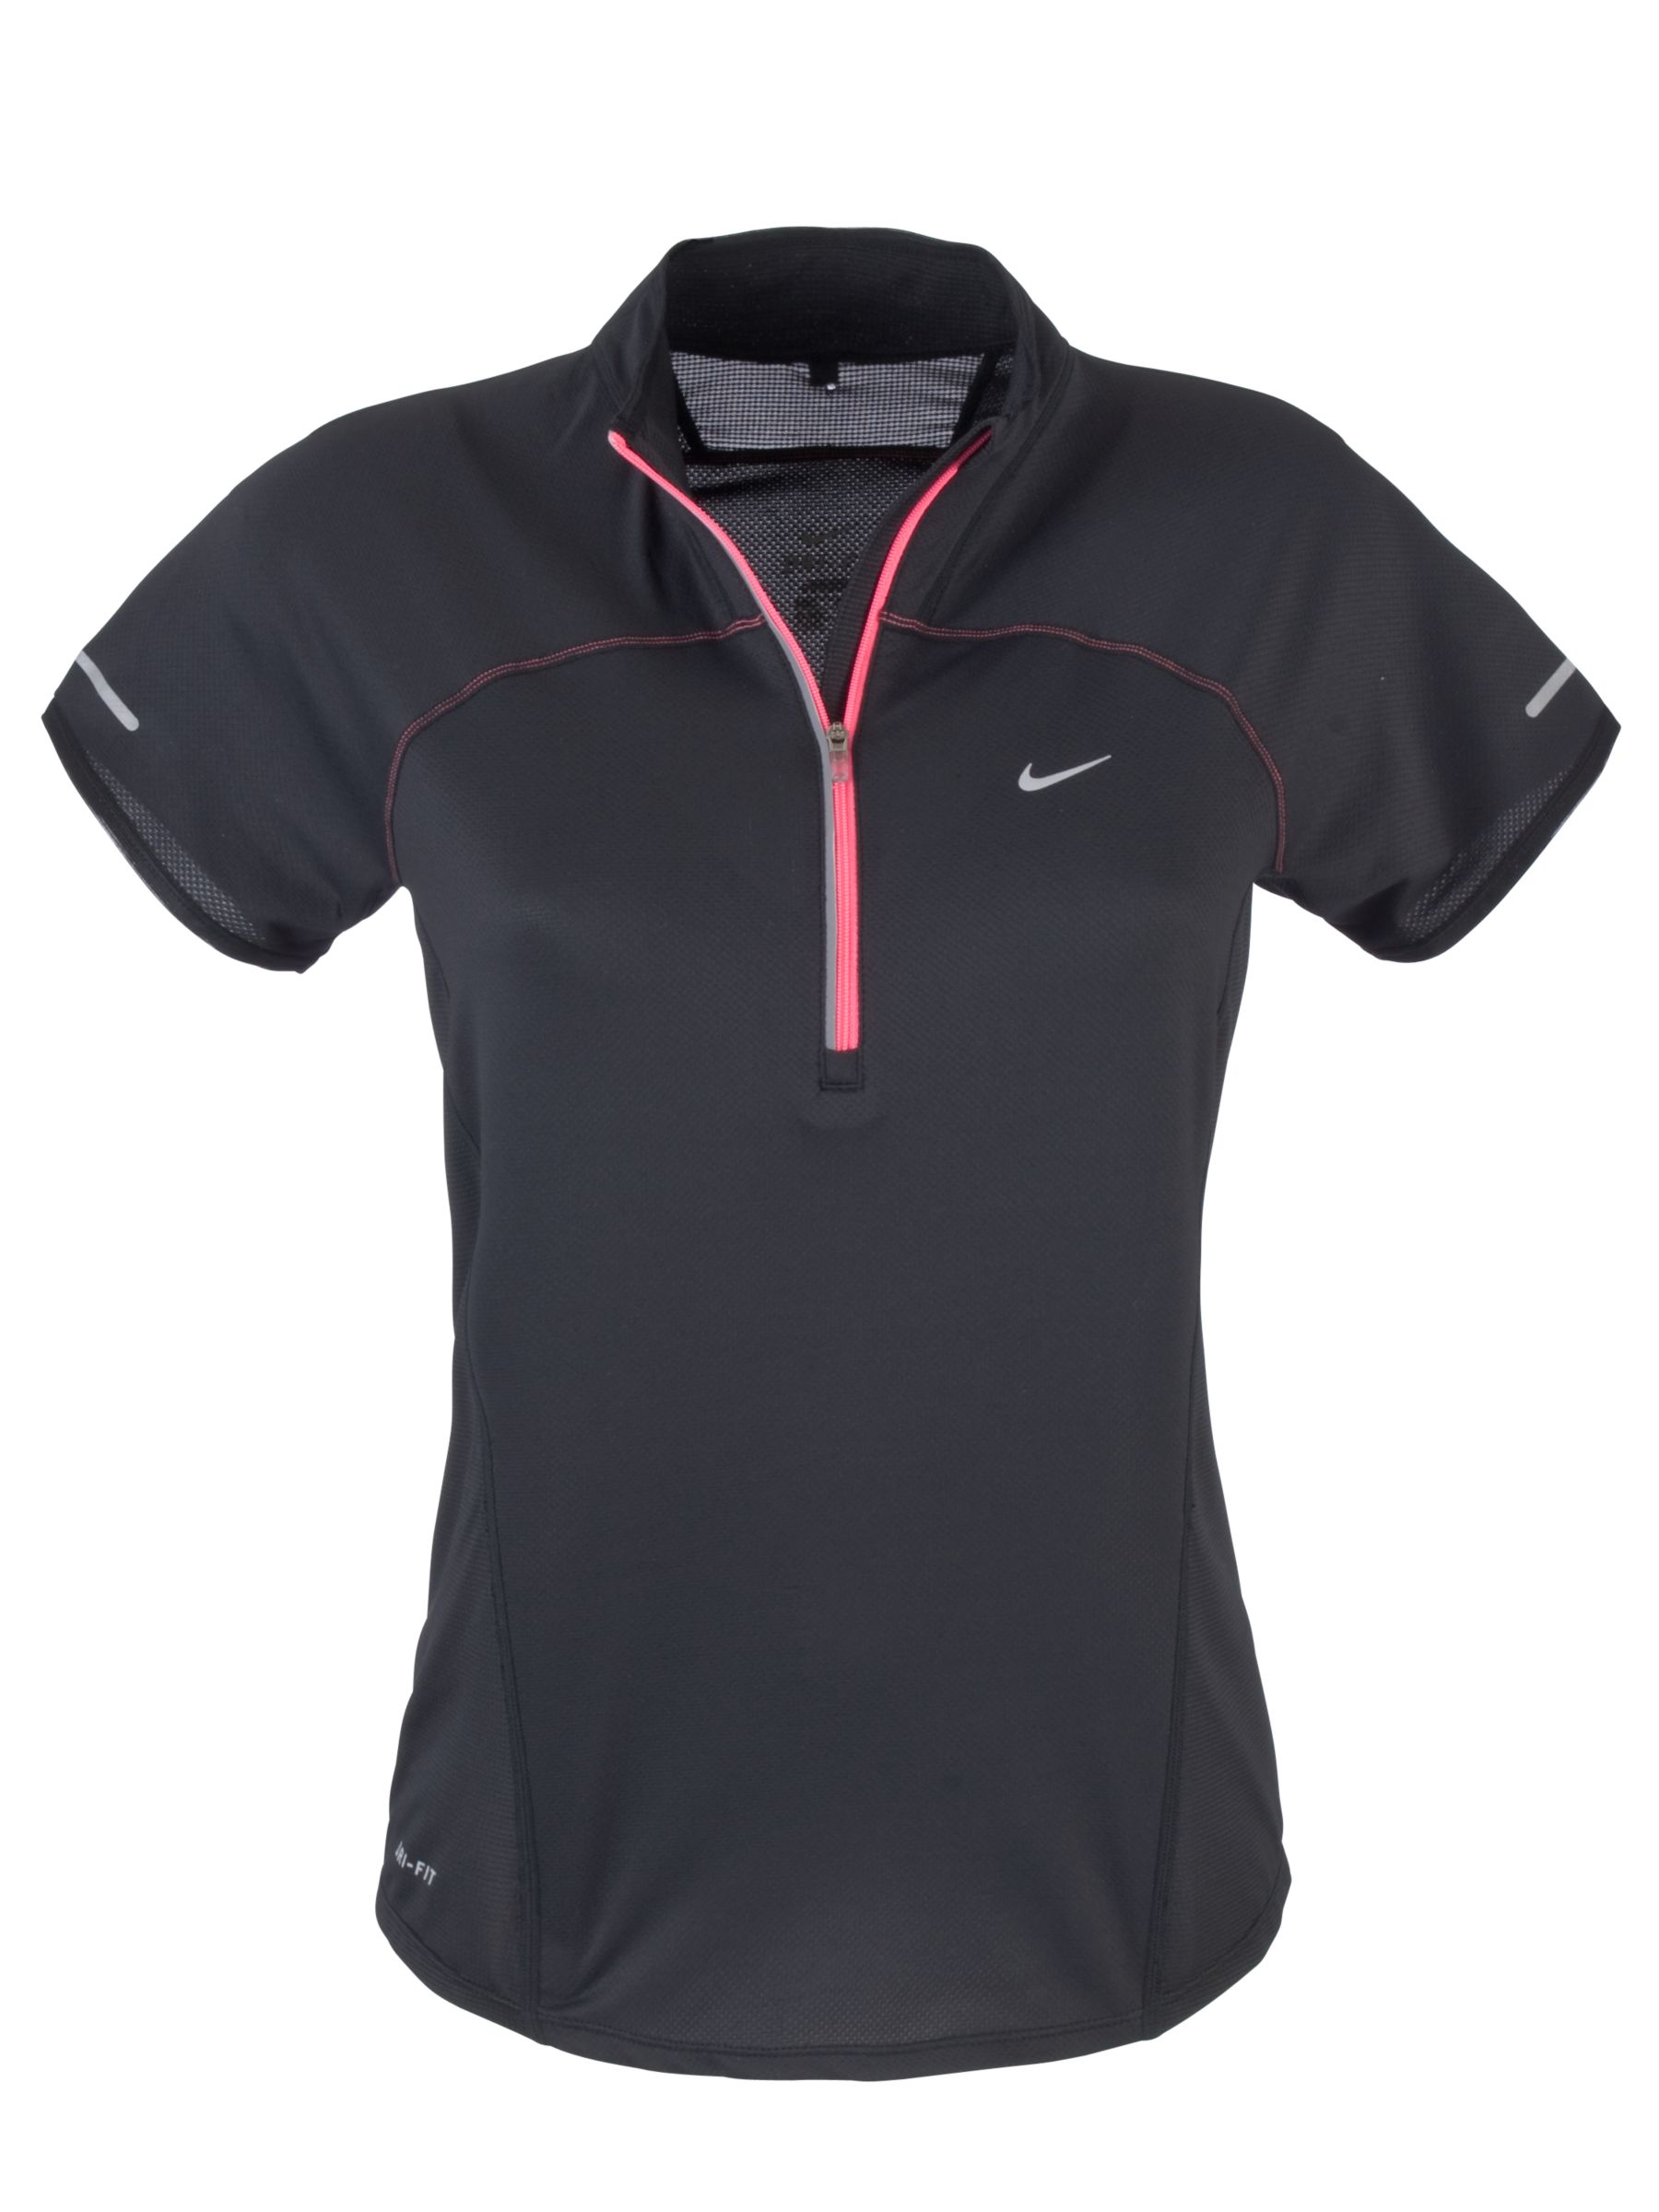 Nike Sphere Half-Zip T-Shirt, Black, S